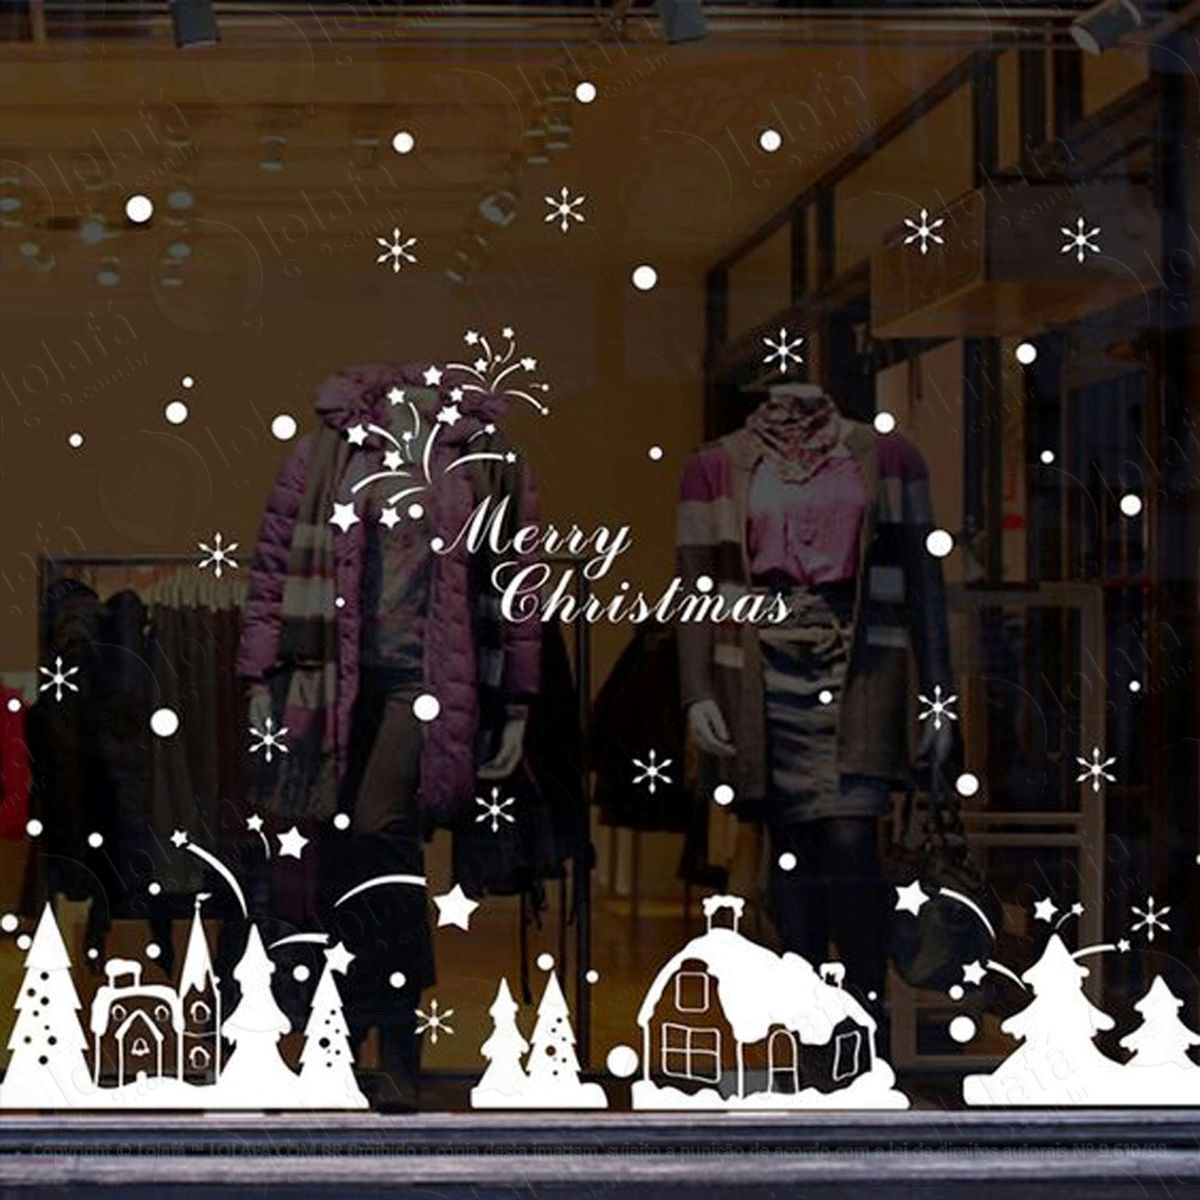 casinhas cidade adesivo de natal para vitrine, parede, porta de vidro - decoração natalina mod:277